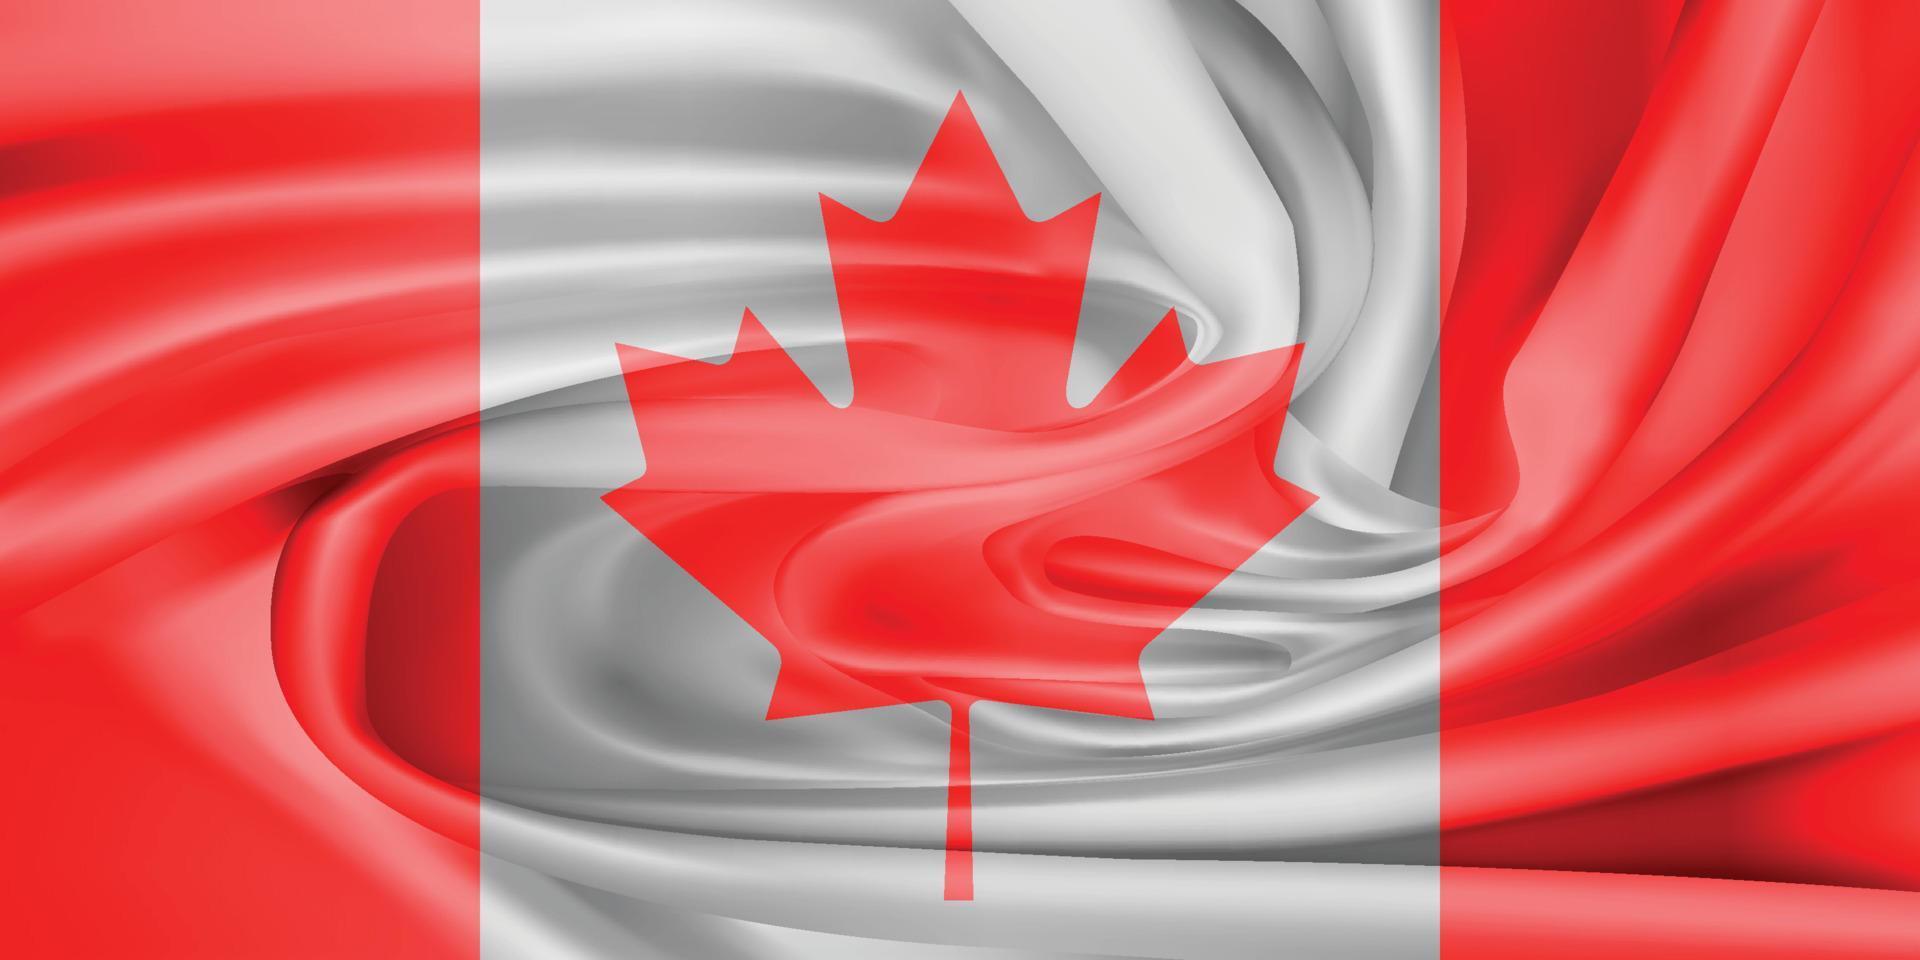 le drapeau national du canada. le symbole de l'état sur un tissu de coton ondulé. vecteur réaliste illustration.flag fond avec texture de tissu